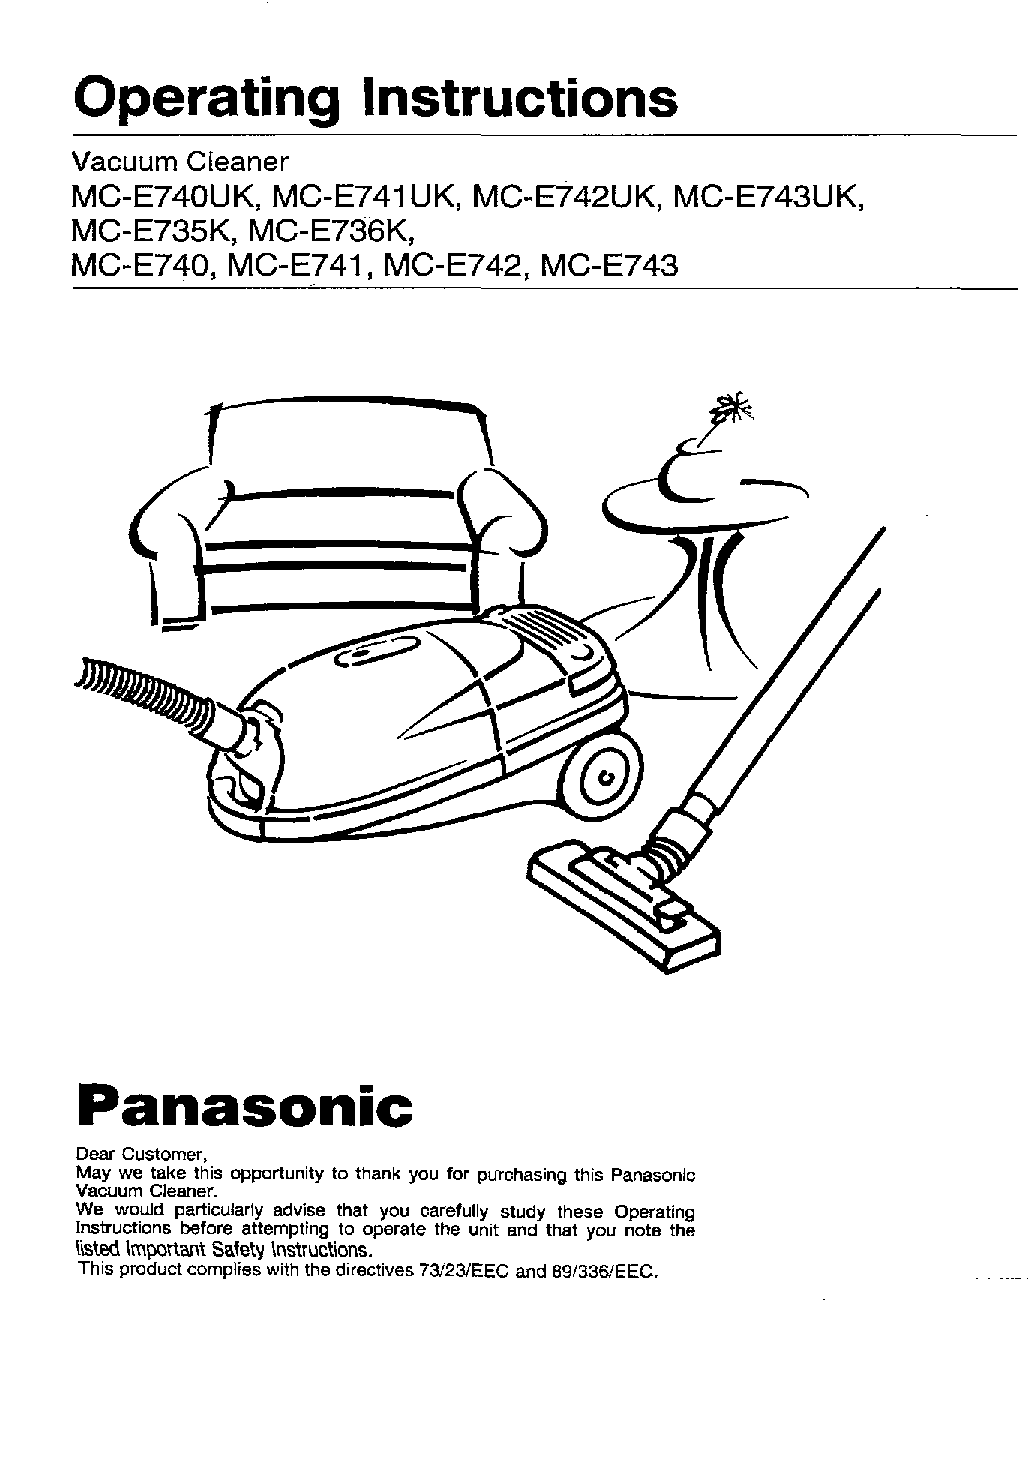 Panasonic MC-E740, MC-E743, MC-E735K, MC-E736K, MC-E742 User Manual